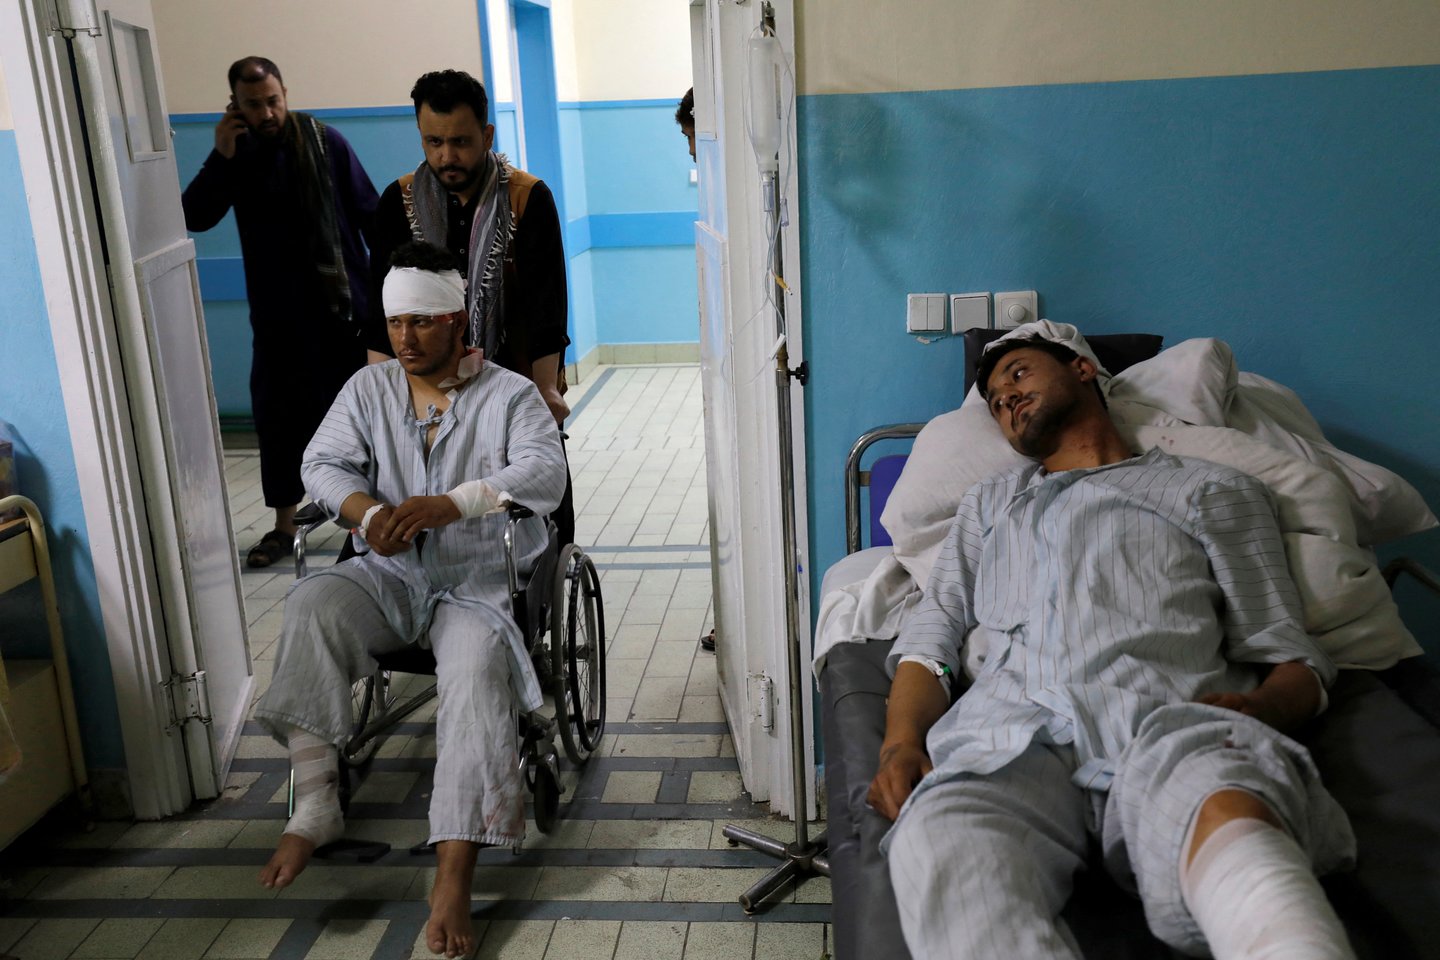 ​Grupuotė „Islamo valstybė“ (IS) prisiėmė atsakomybę už pirmadienį prie Rusijos ambasados Afganistano sostinėje Kabule įvykdytą savižudžio sprogdintojo išpuolį.<br>Reuters/Scanpix nuotr.